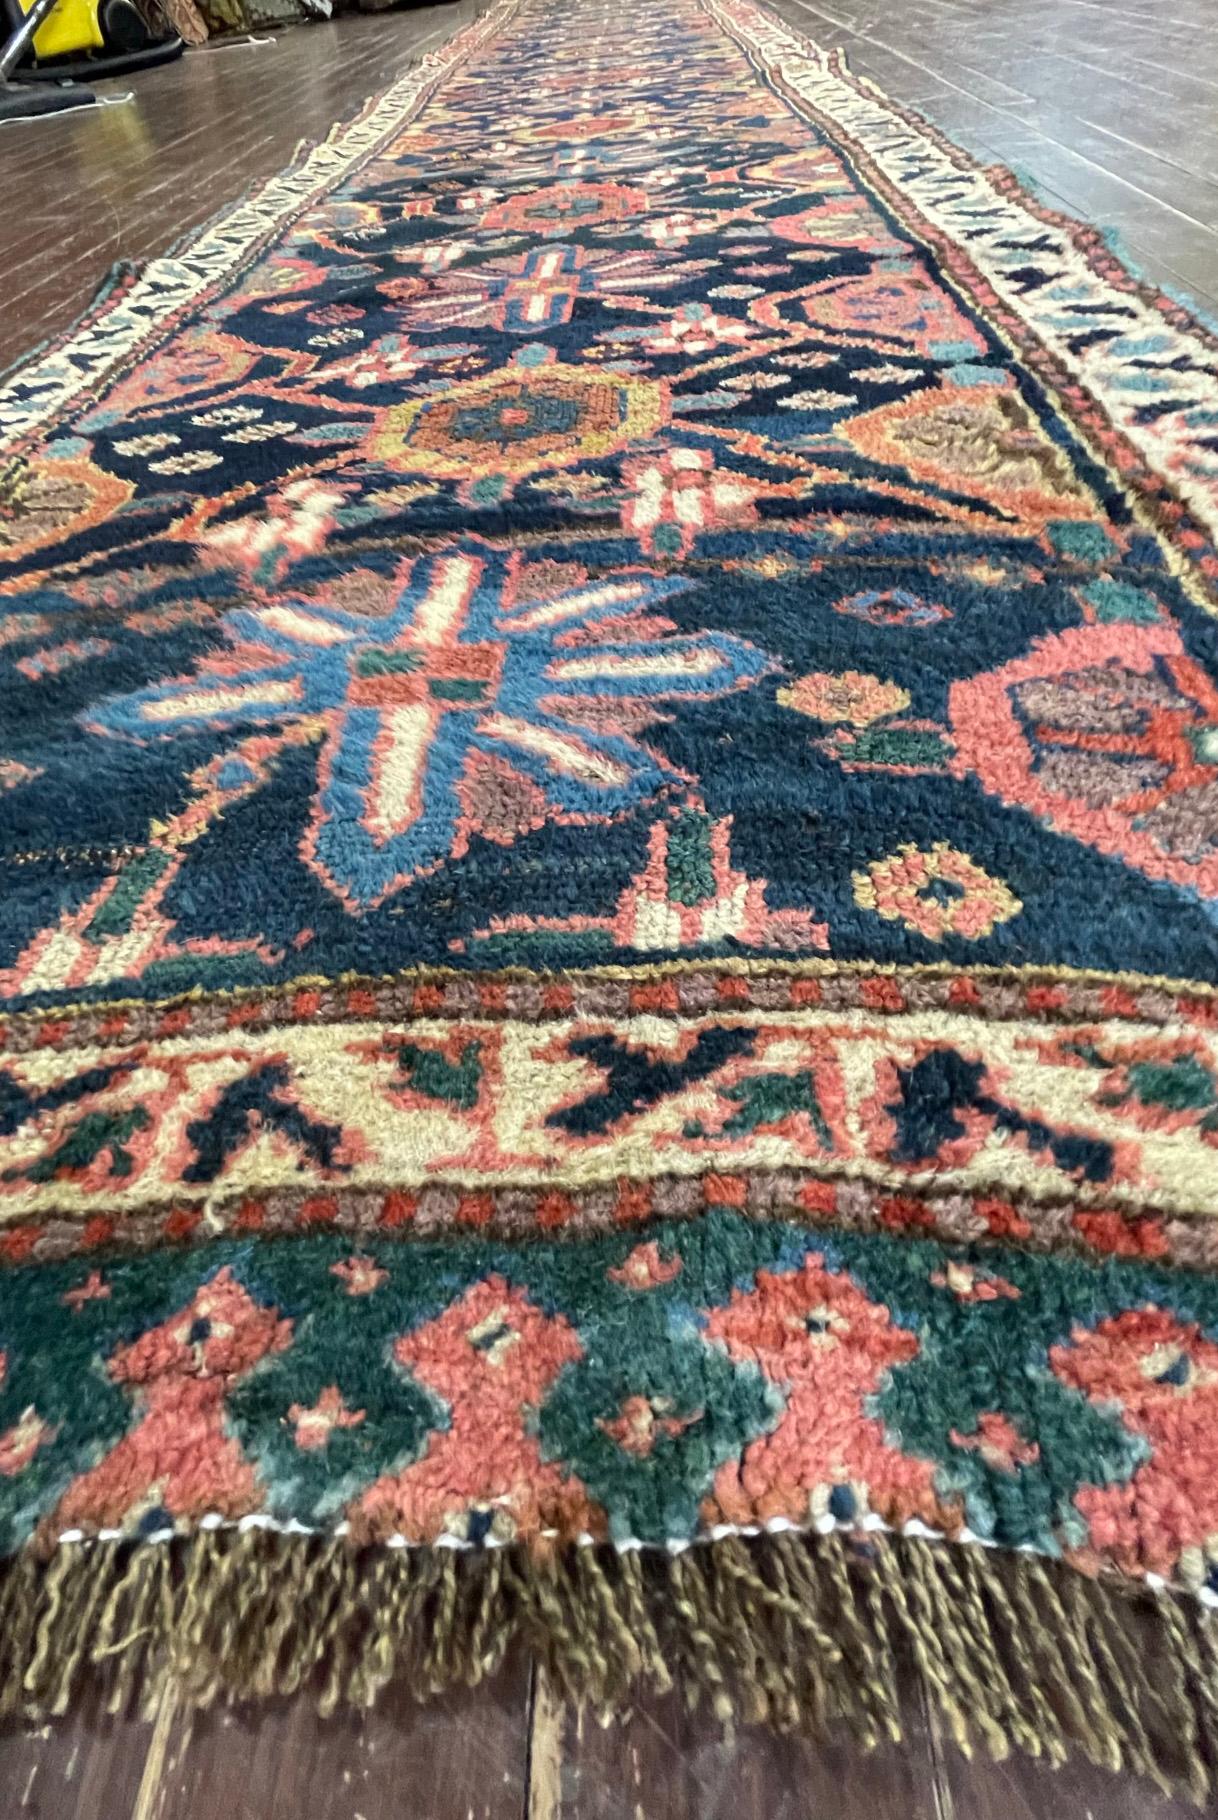 Absolument magnifique tapis galerie Persan kurde Bijar Halvayi avec une base en laine et un beau motif géométrique et Abrash avec des teintures végétales en rouge, or et bleu en bon état, vers 1900.
Bijar (ou Bidjar) est le nom d'une petite ville